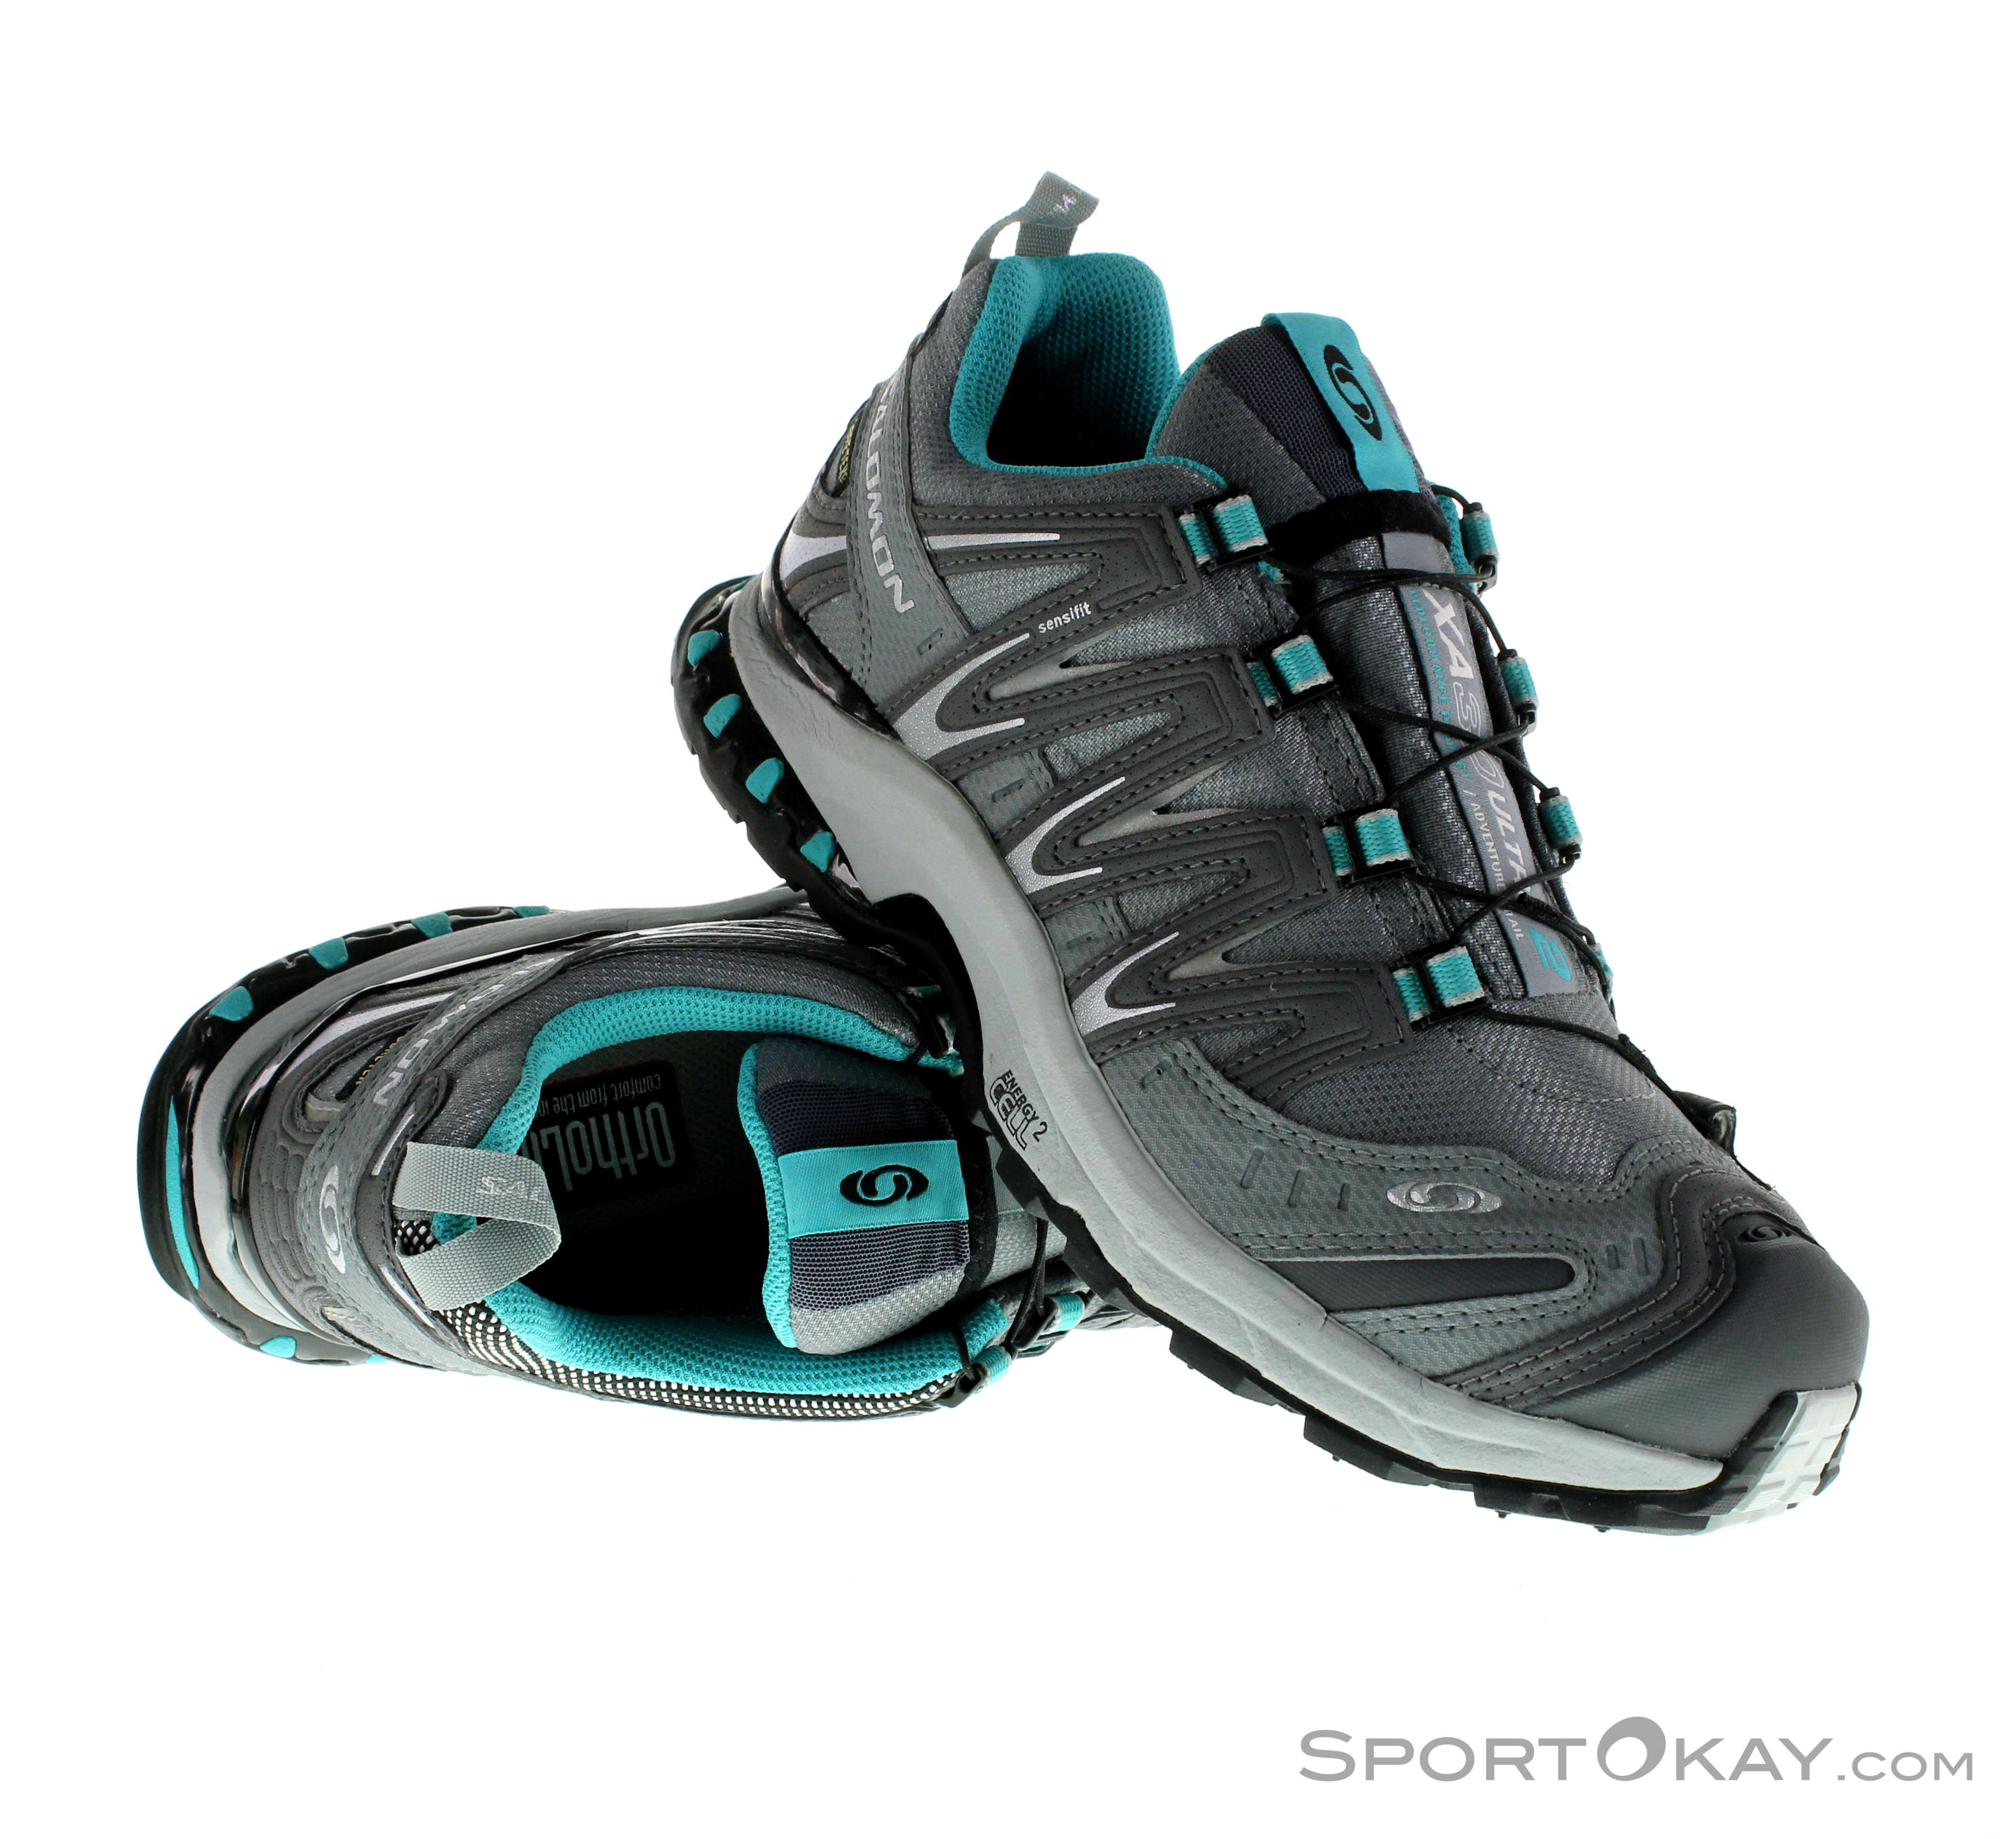 Salomon XA Pro 3D Ultra 2 GTX Damen Traillaufschuhe - Trail Running Shoes - Shoes - Running - All